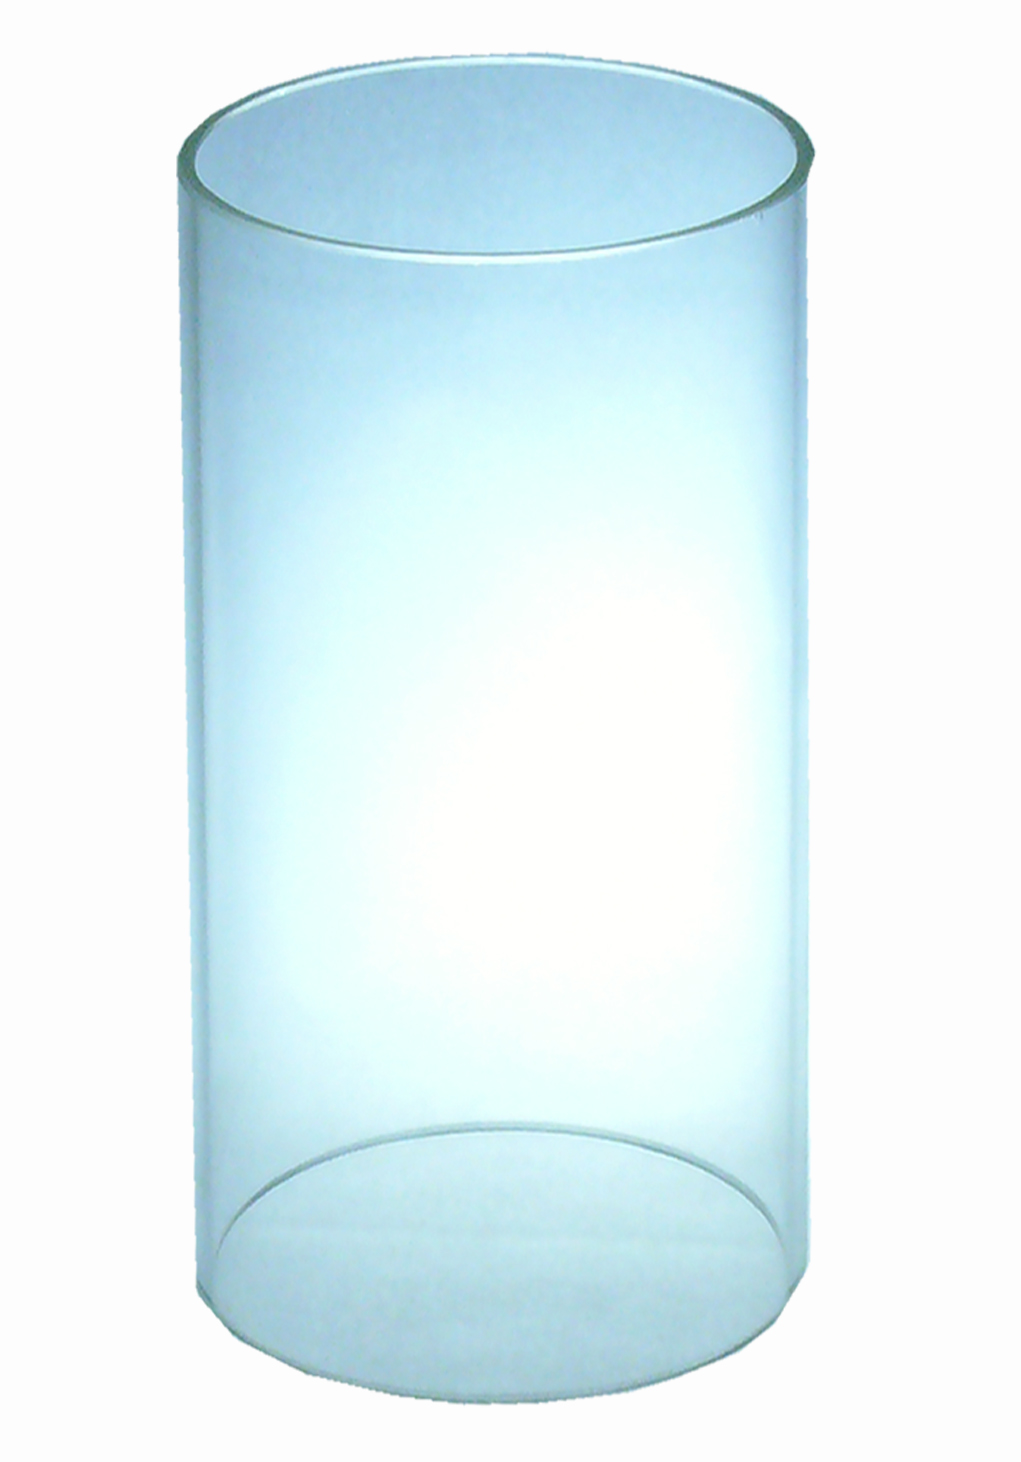 Glaszylinder 20,5 cm h, 9,5 cm Ø, ohne Boden, Klarglas weiß